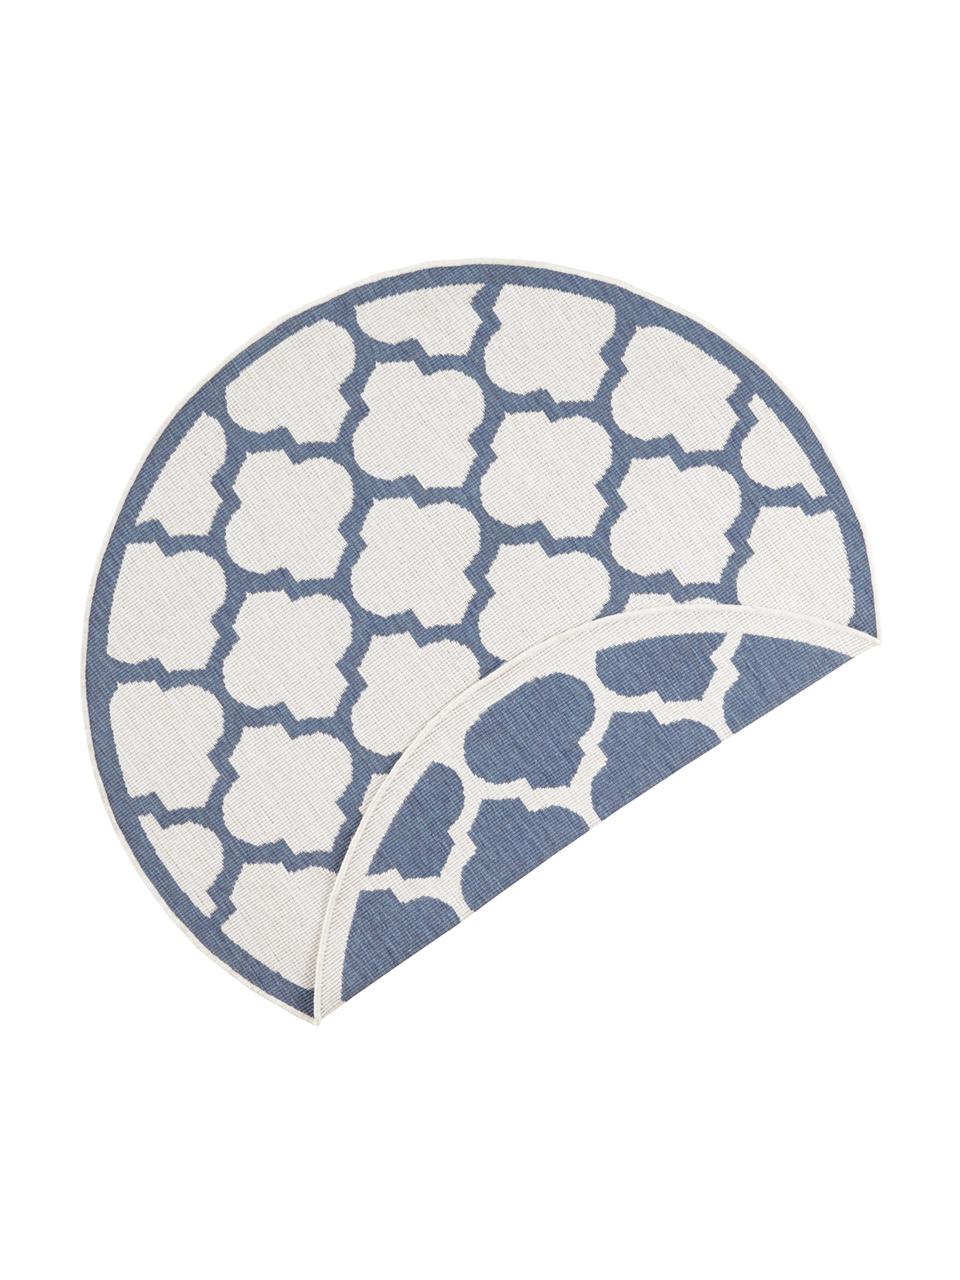 Okrągły dwustronny dywan wewnętrzny/zewnętrzny Palermo, Niebieski, kremowy, Ø 140 cm (Rozmiar M)